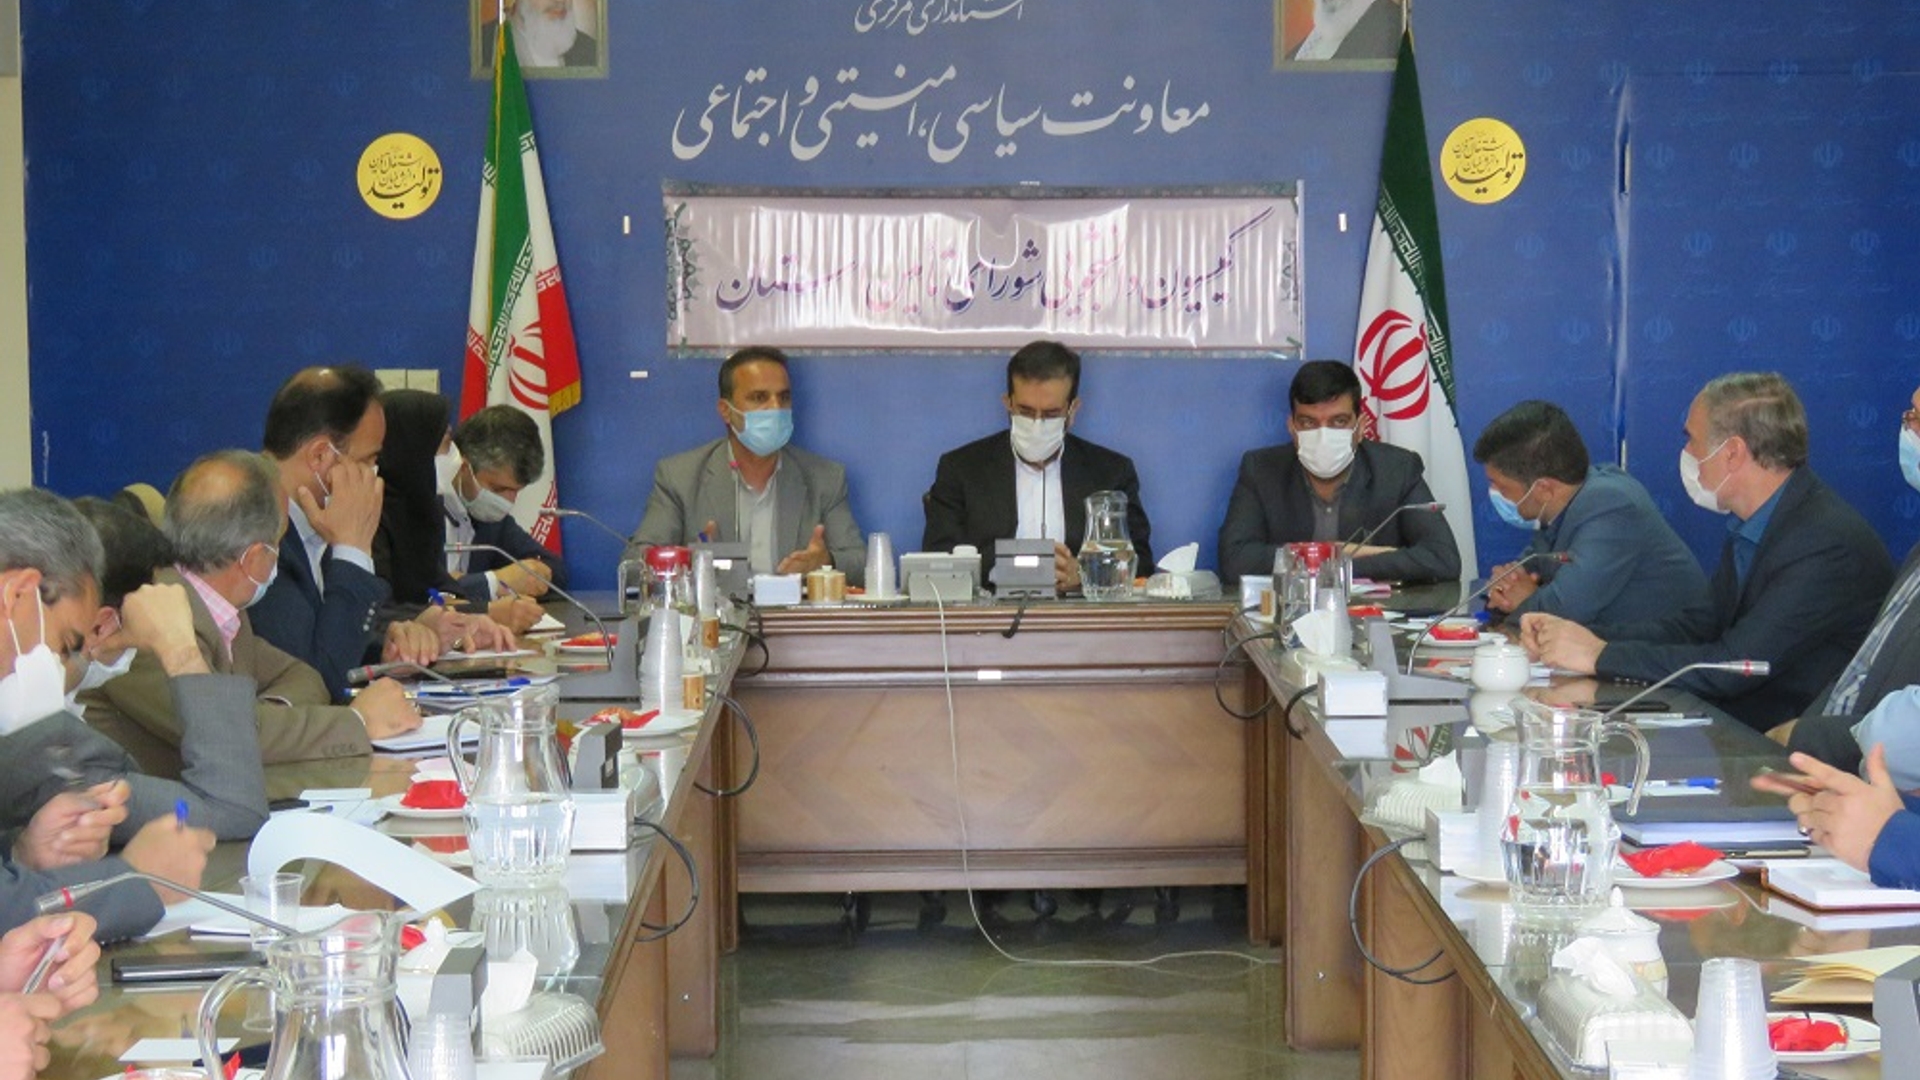 جلسه کمیسیون دانشجویی استان در روز چهار شنبه مورخ 1401-02-21به ریاست نظری سرپرست معاونت سیاسی ، امنیتی و اجتماعی برگزار شد.